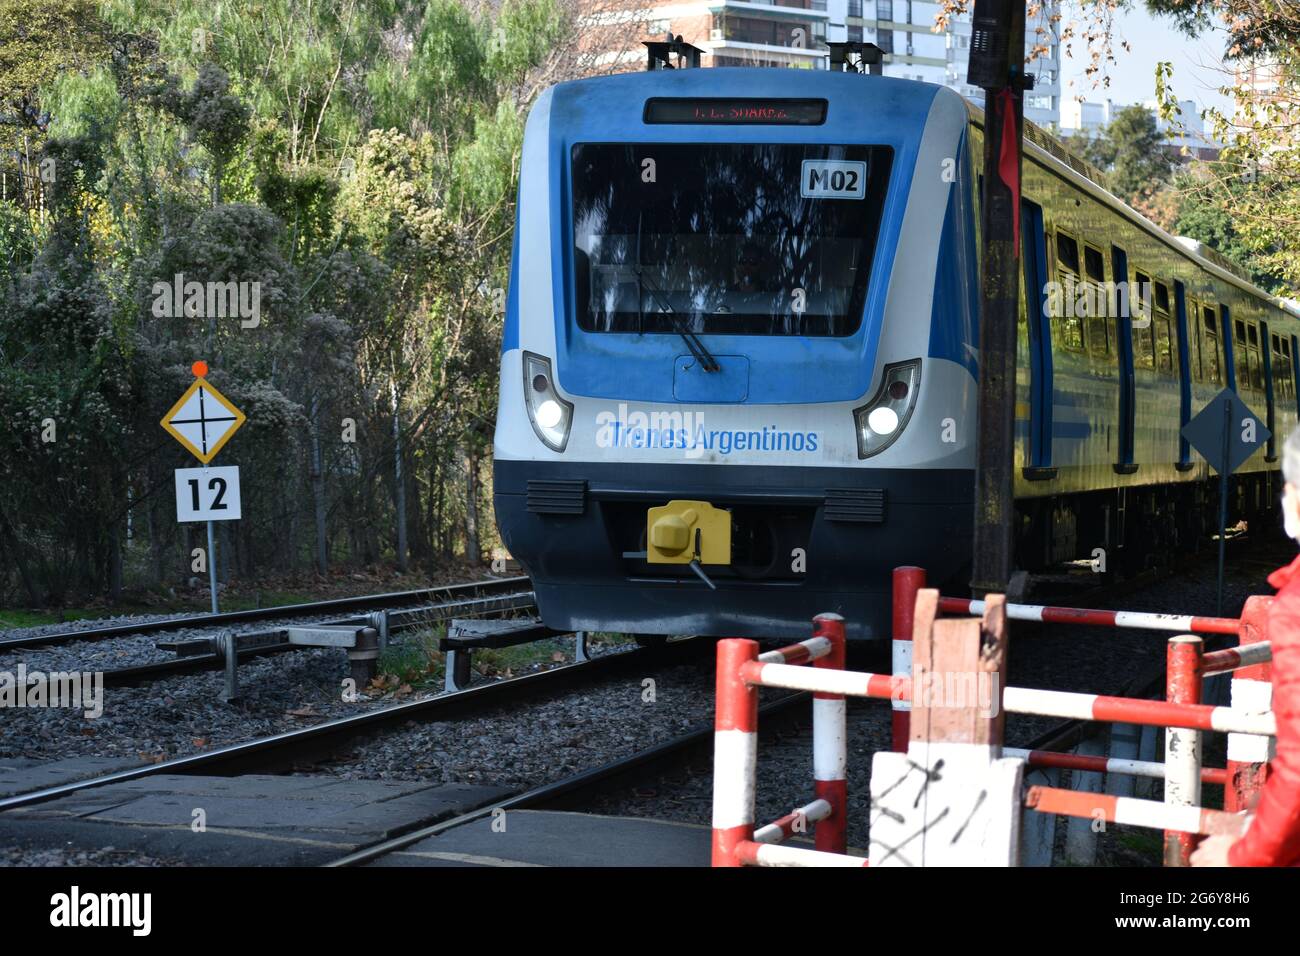 Buenos Aires, Argentinien - 8. Juli 2021: Zug der staatlichen Eisenbahngesellschaft Argentiniens in der Nähe des Bahnhofs Belgrano R Stockfoto